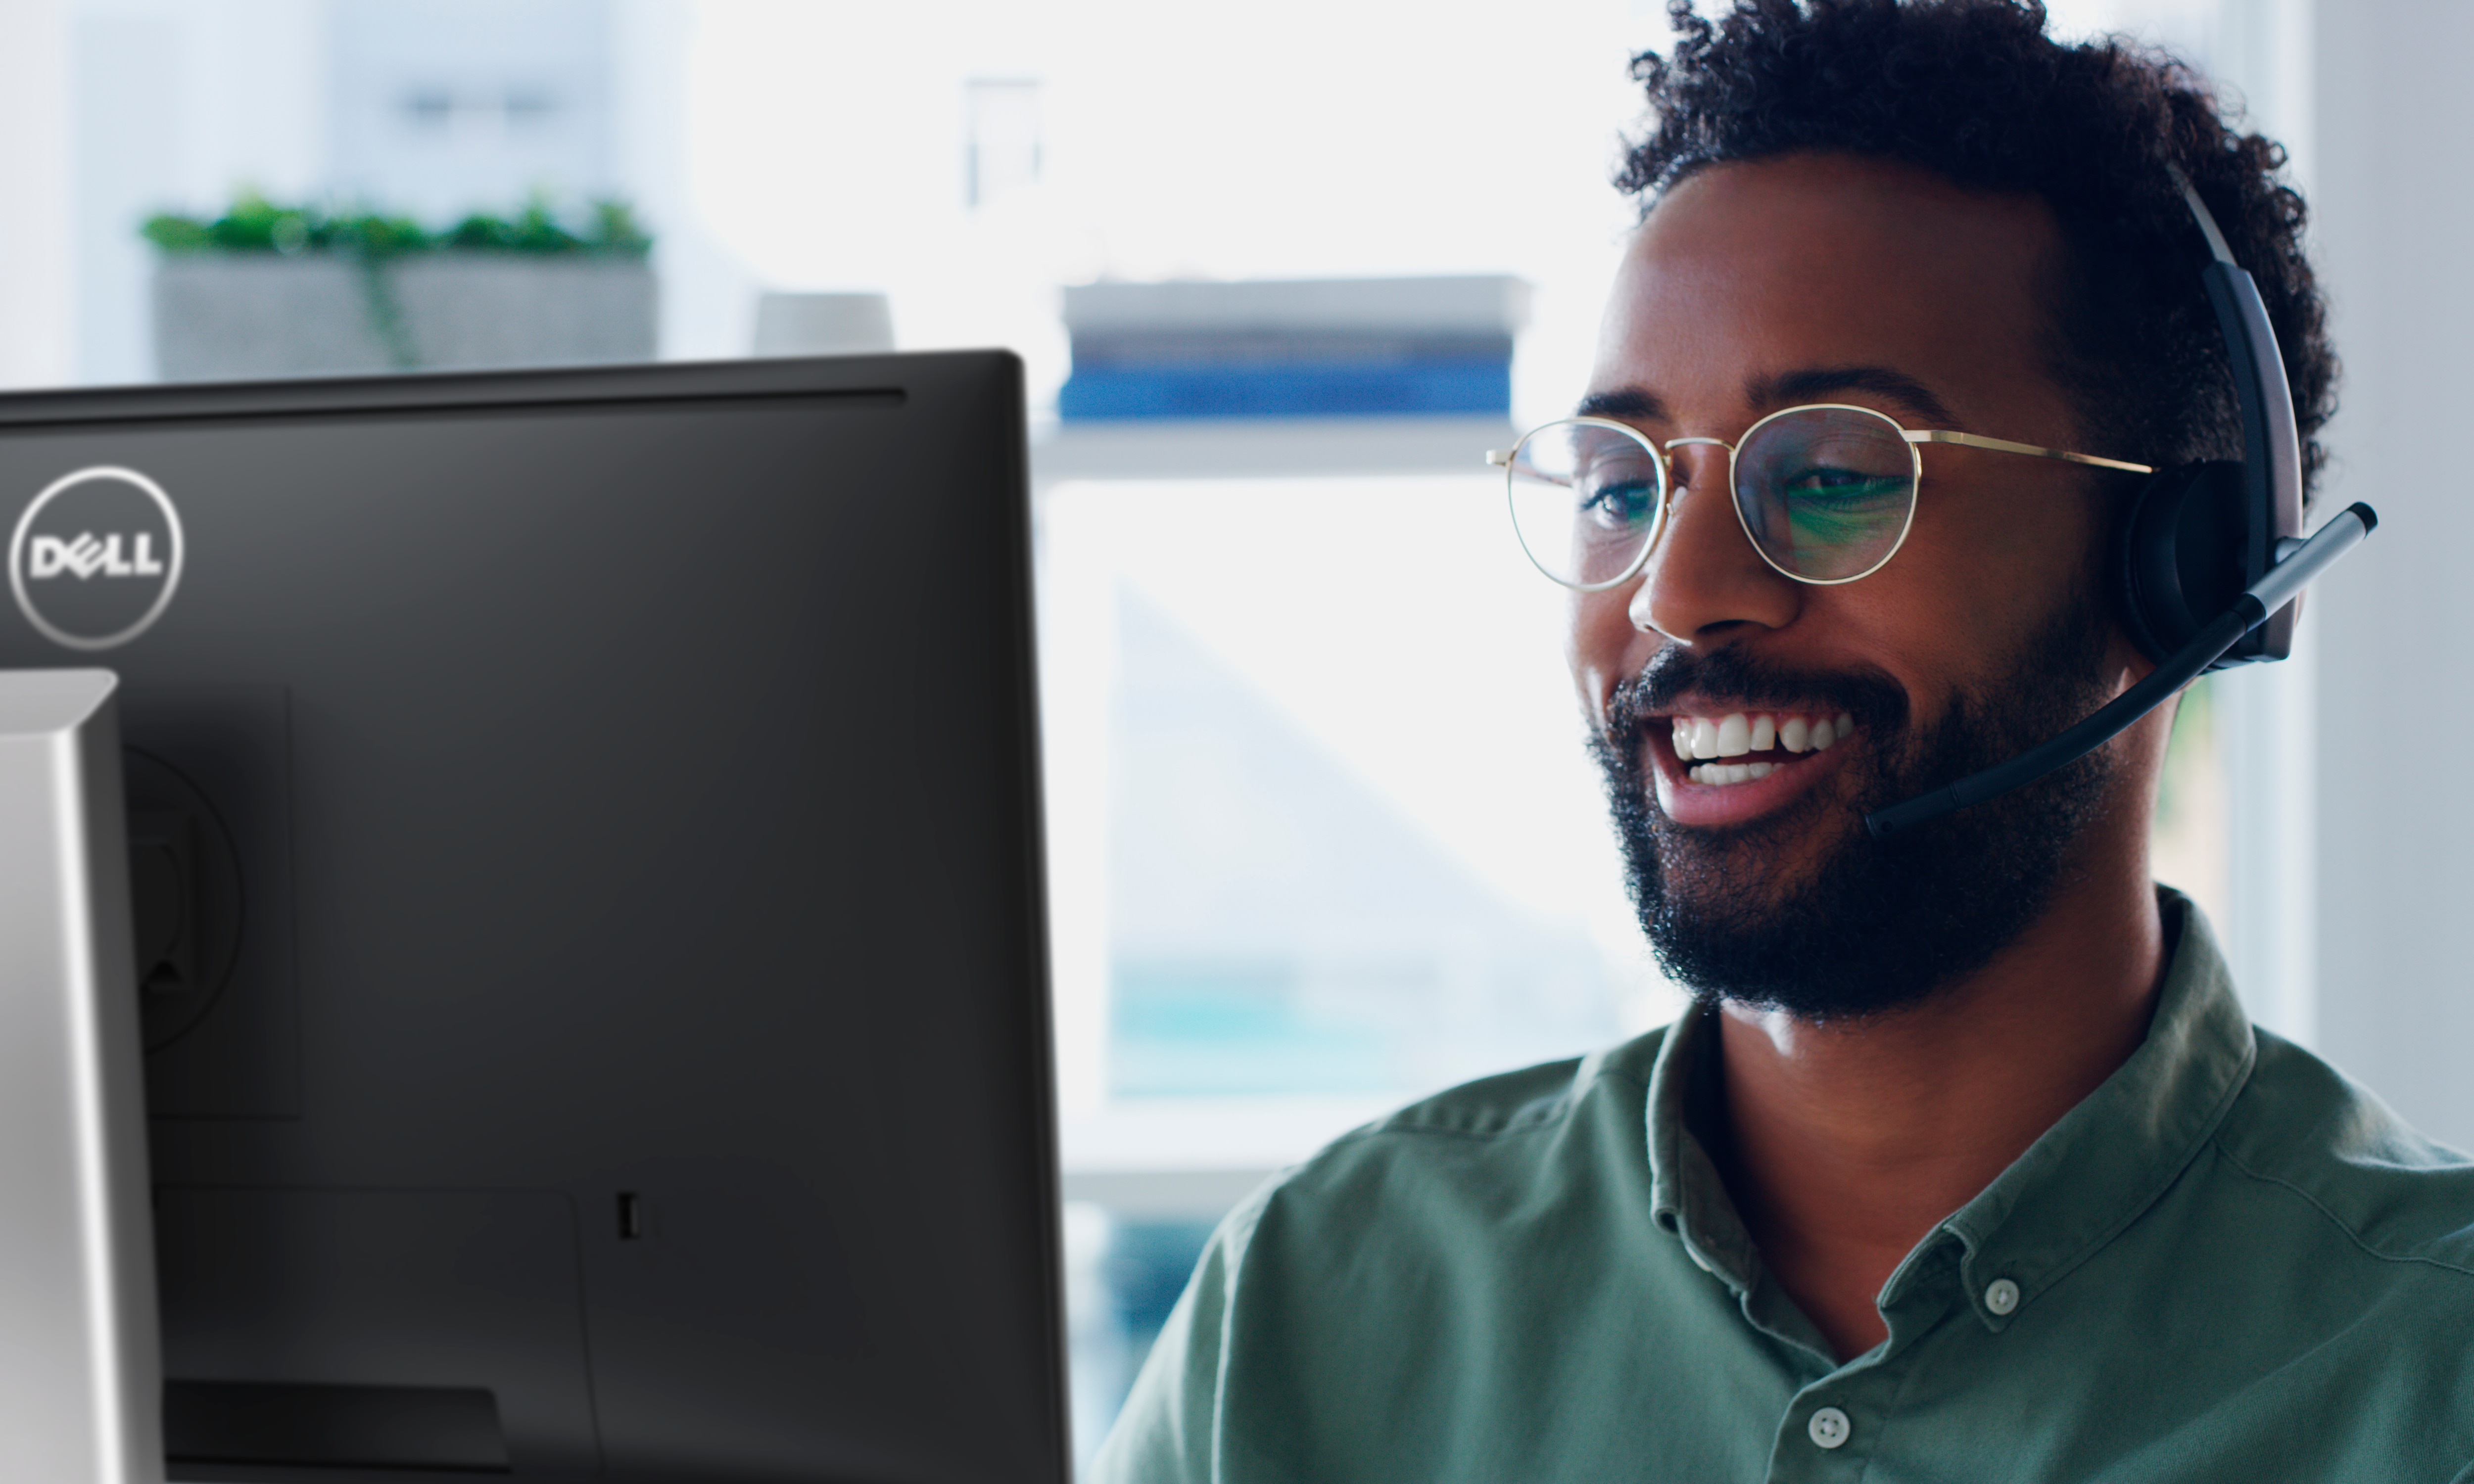 En smilende mann med briller og hodetelefoner på som bruker en Dell-skjerm.